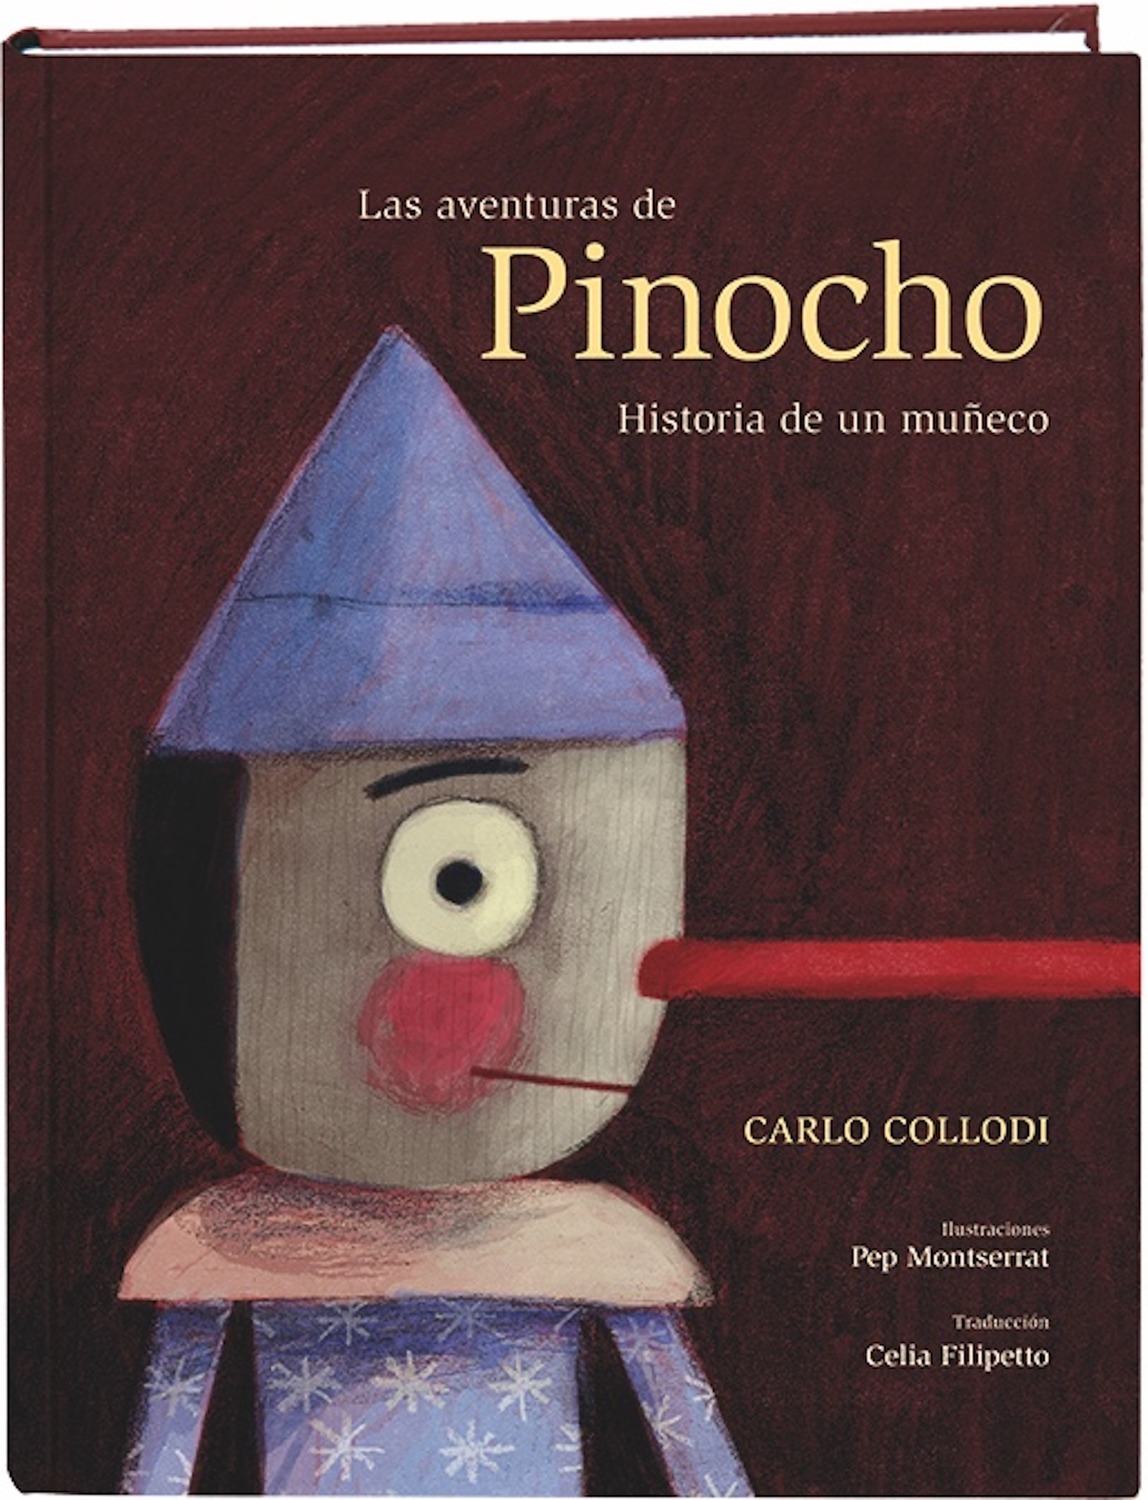 Las aventuras de Pinocho. Historia de un muñeco: Combel Editorial